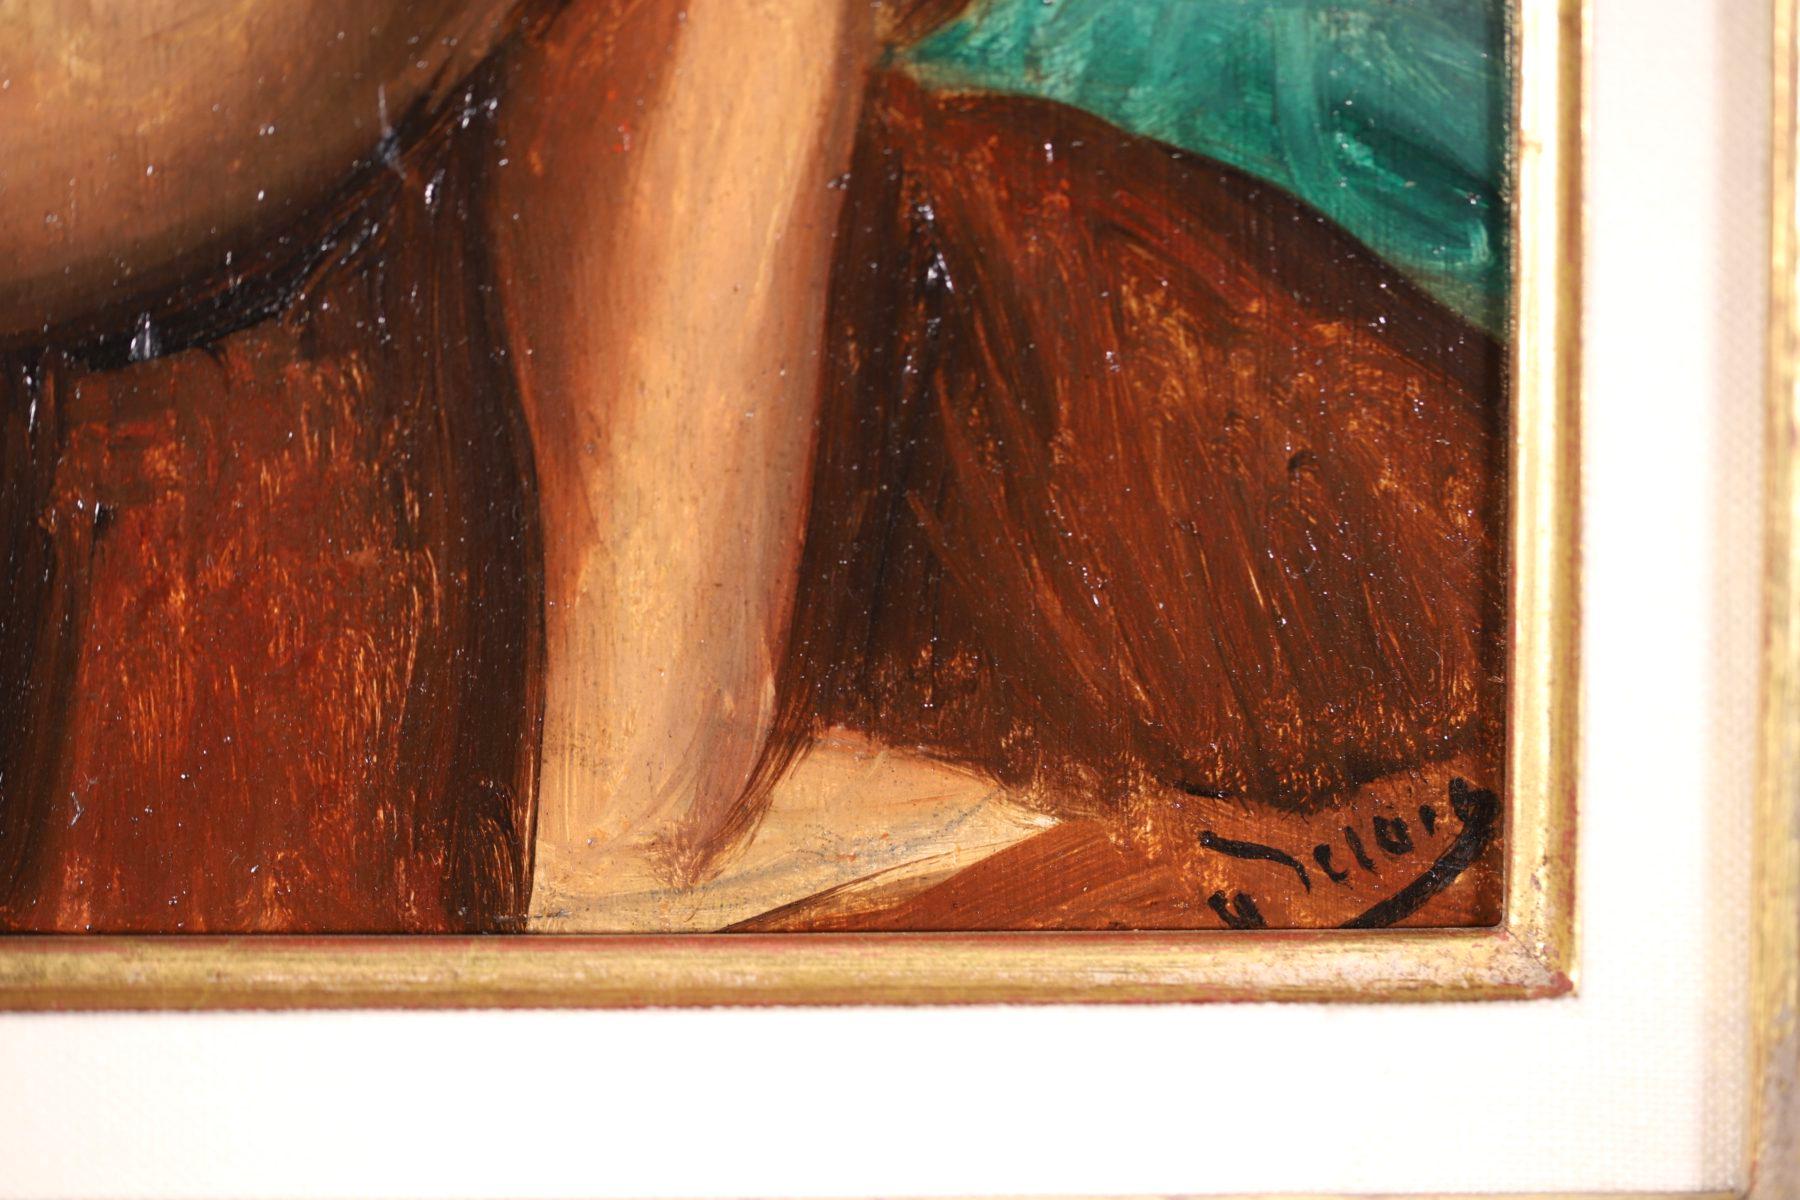 Une magnifique huile sur panneau réalisée vers 1924-1925 par le peintre fauviste français André Derain. Cette œuvre magnifiquement brossée représente une femme nue détournée du peintre, appuyée sur sa jambe droite. 

Signature :
Signé en bas à